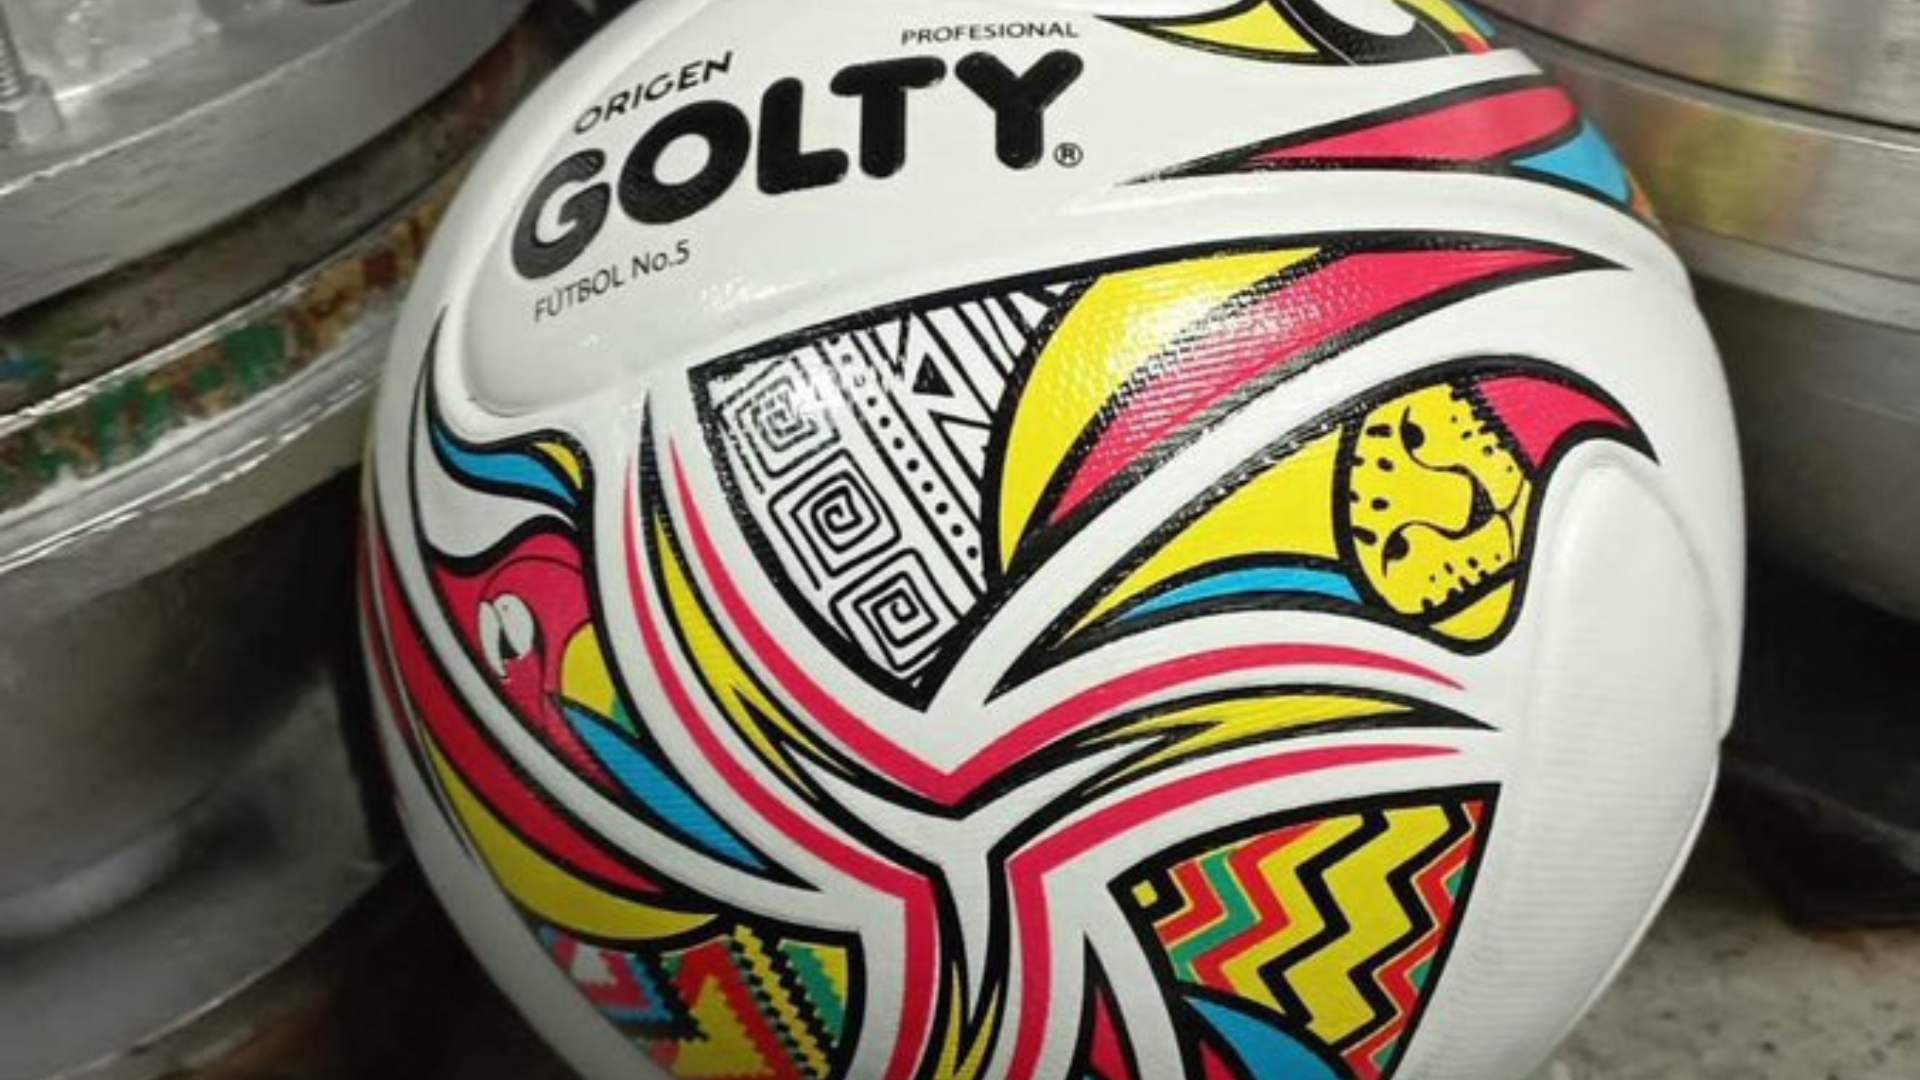 Imágenes de los balones del fútbol profesional colombiano